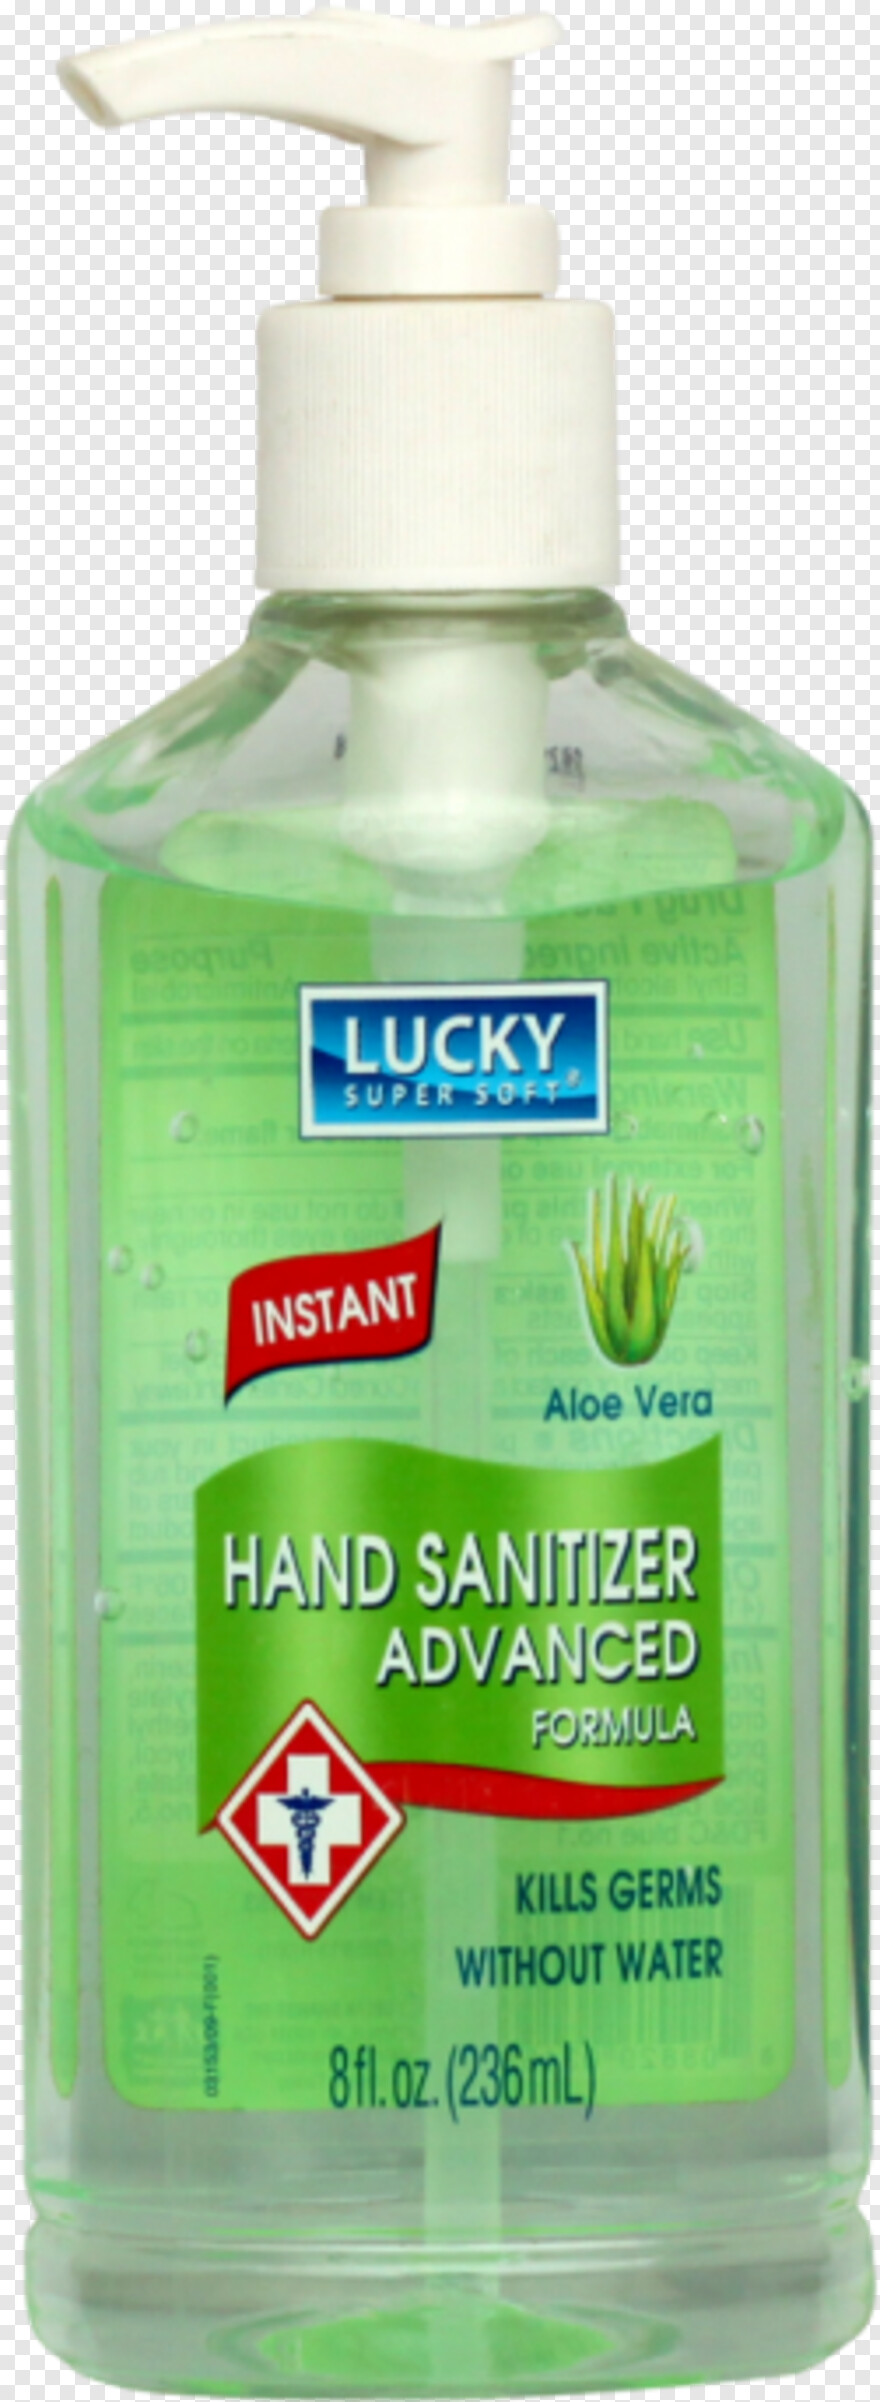 hand-sanitizer # 775027